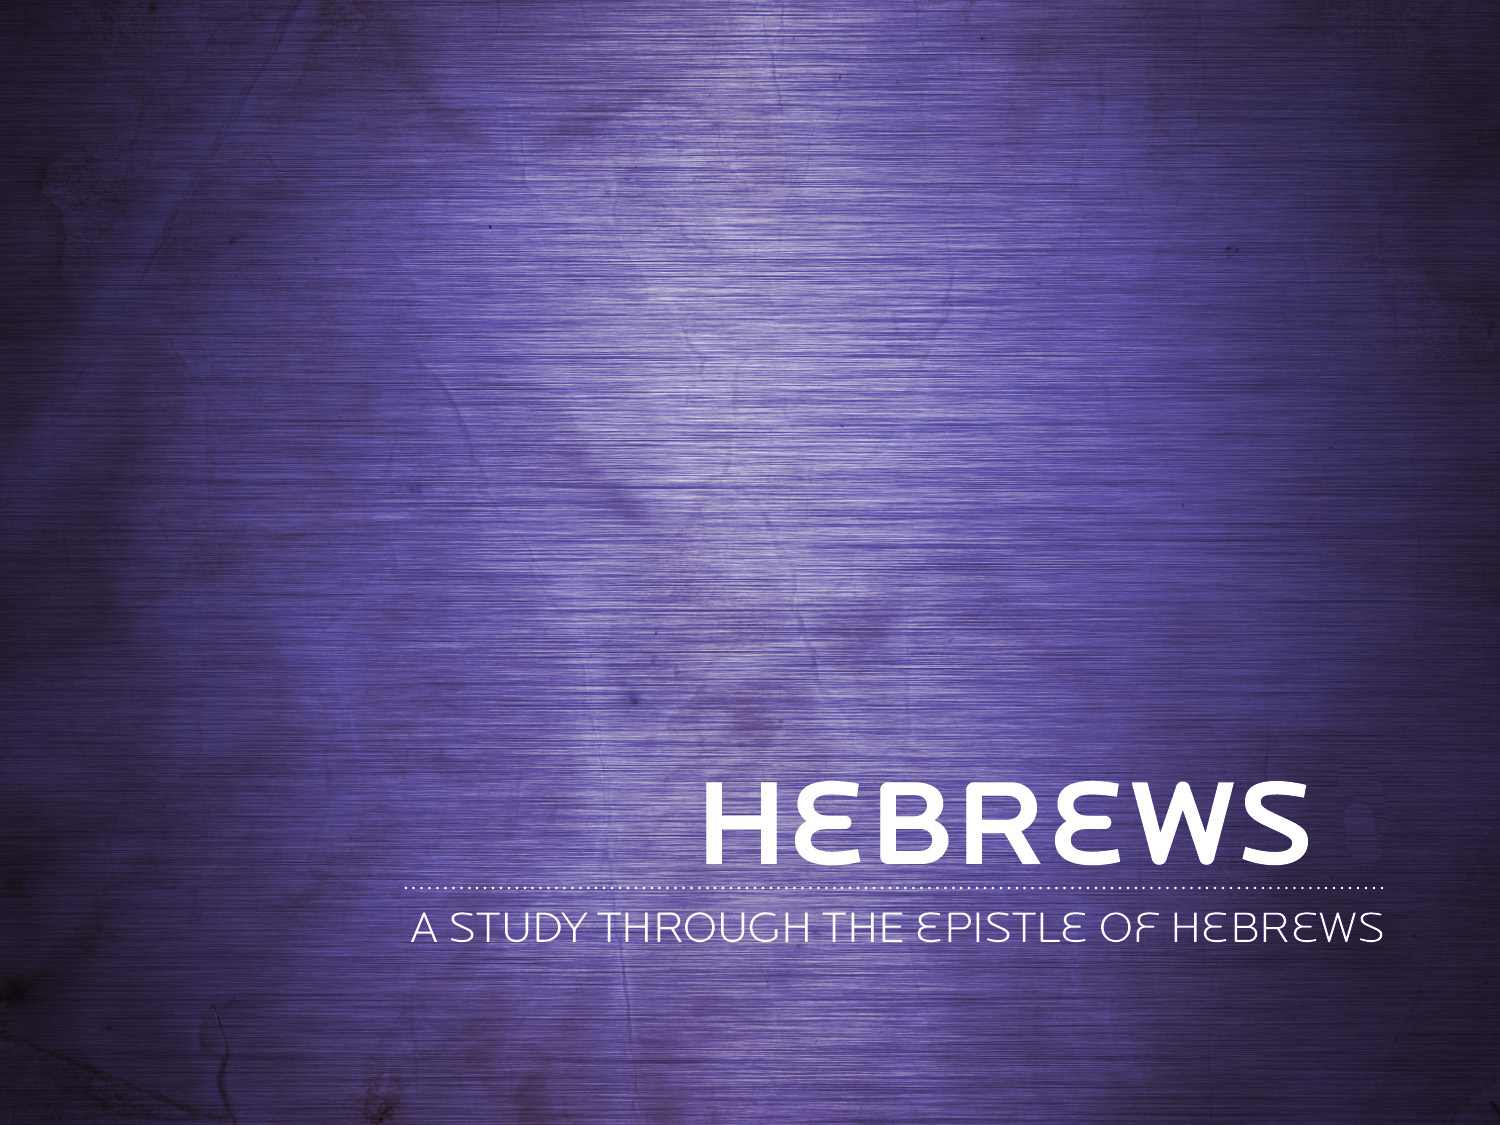 Hebrews 2:1-4